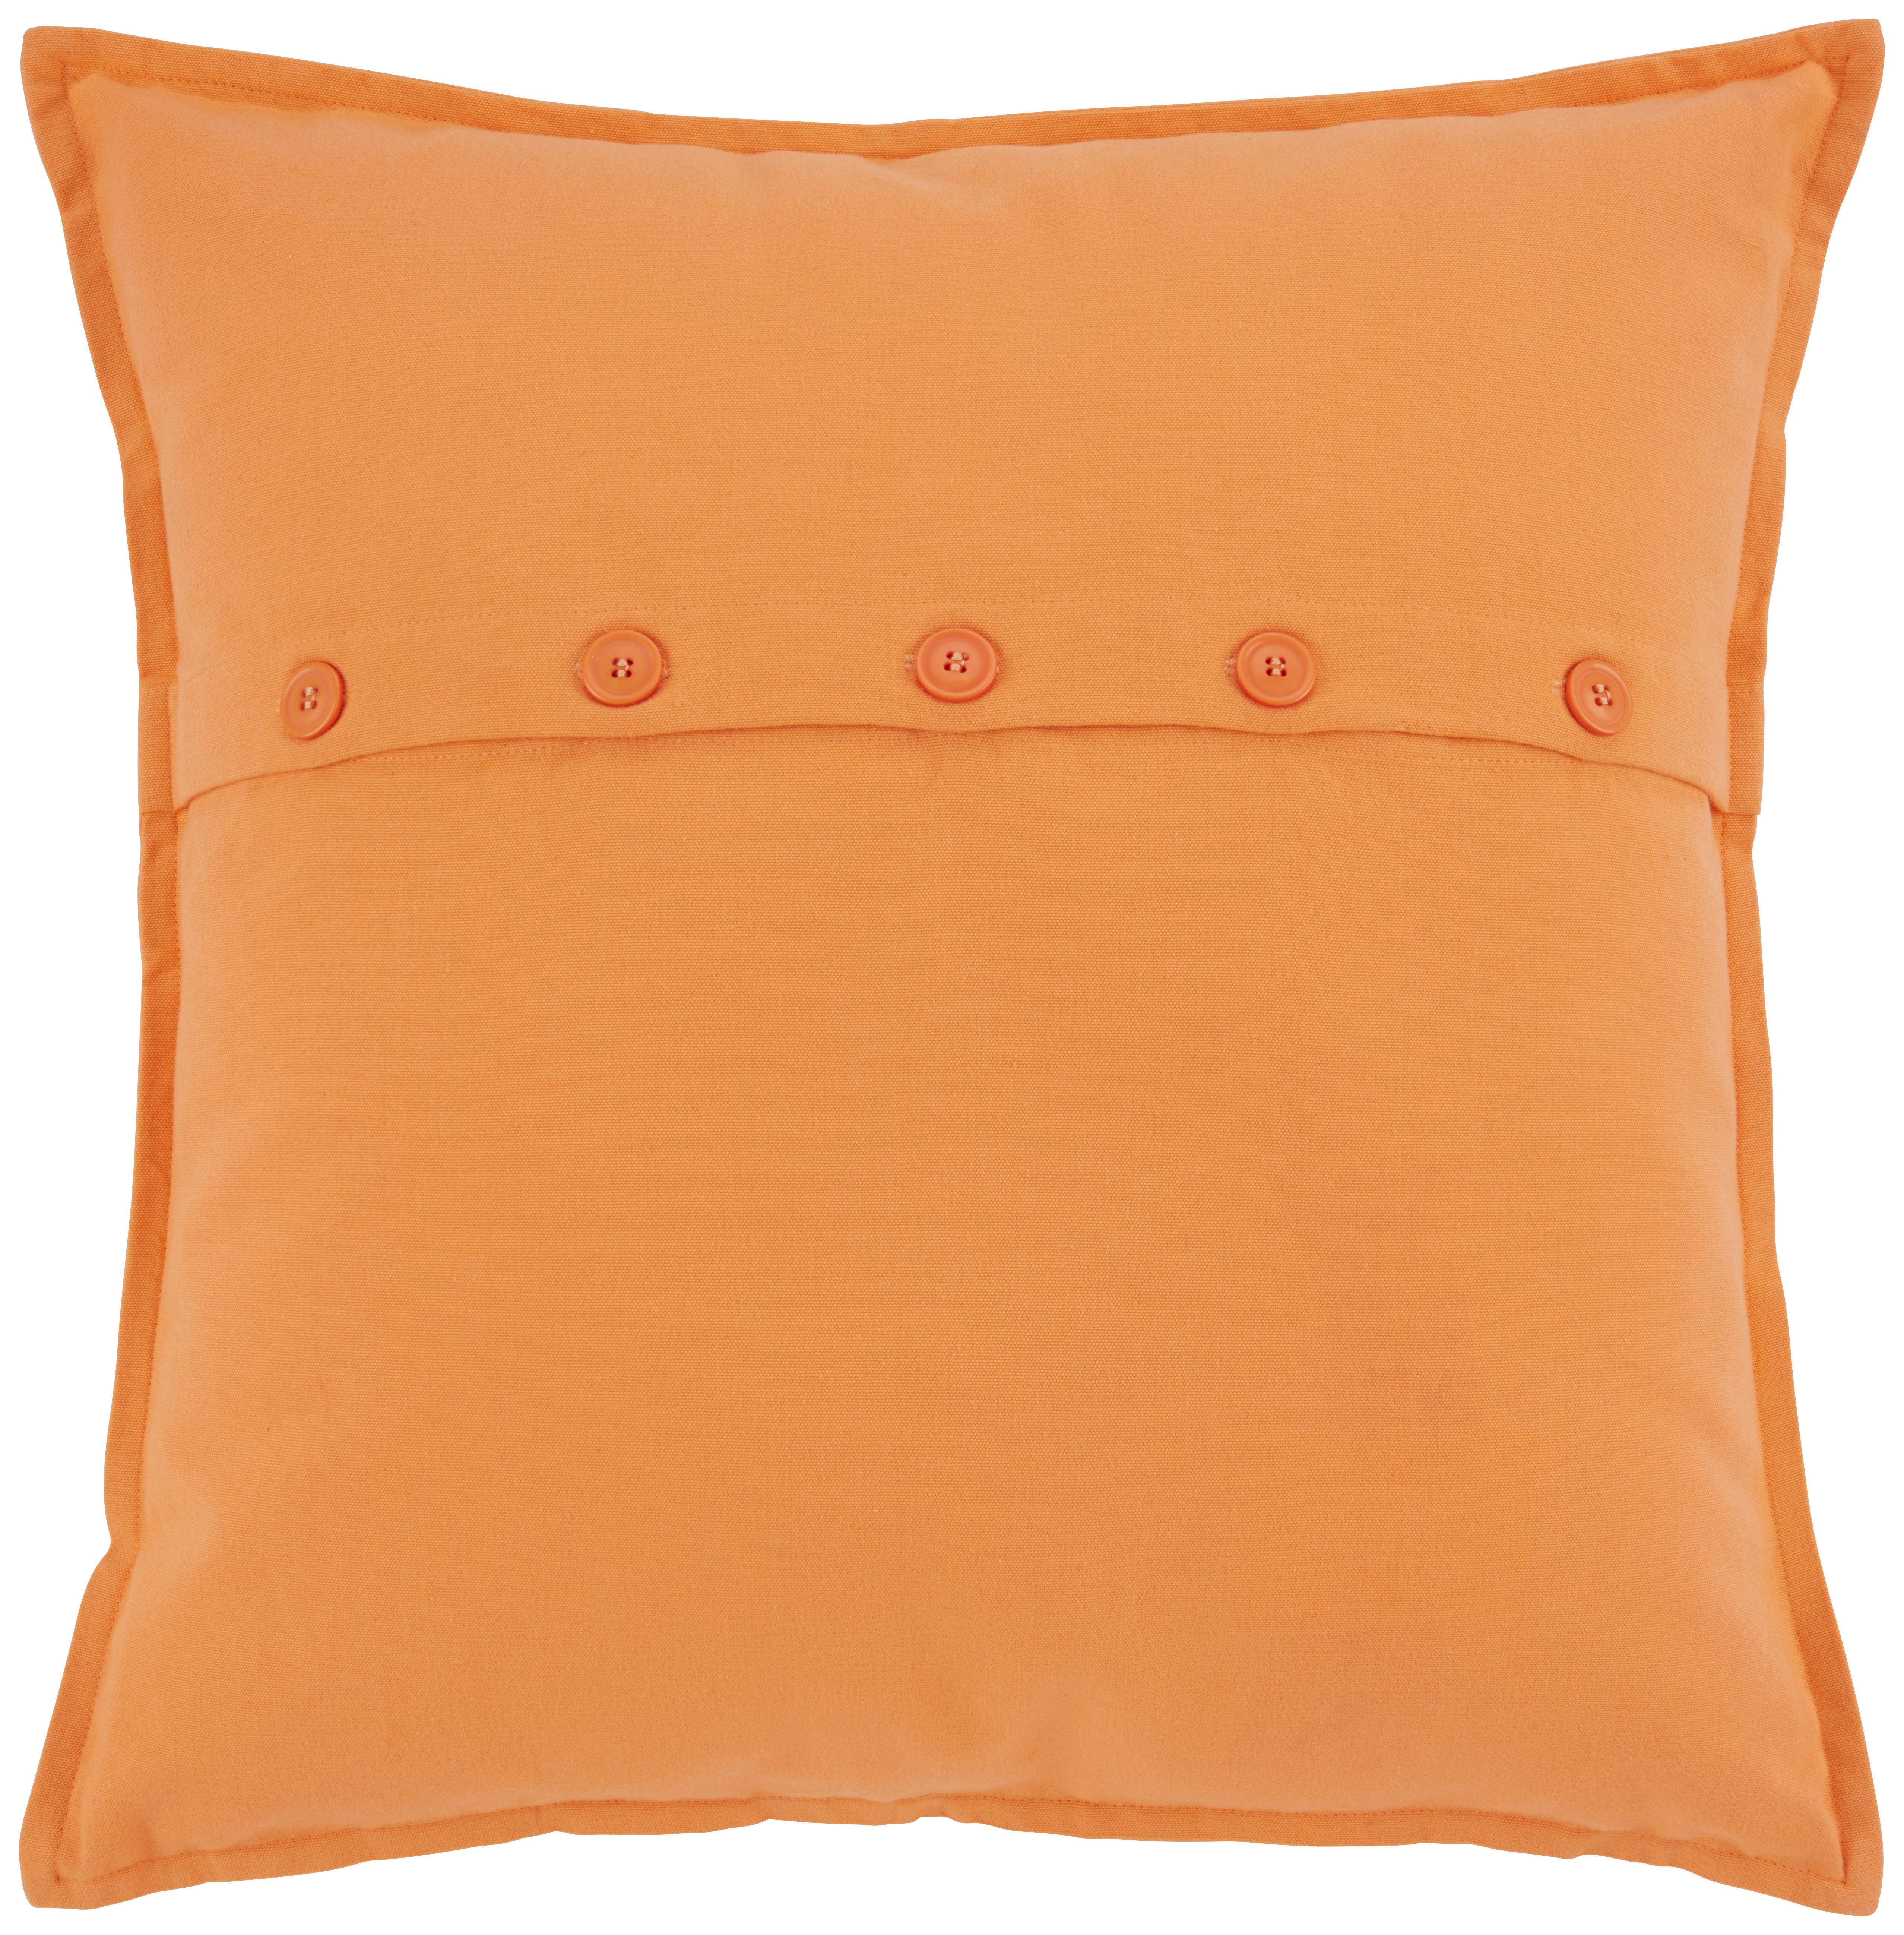 Zierkissen Nora in Orange ca. 50x50cm - Orange, KONVENTIONELL, Textil (50/50cm) - Modern Living